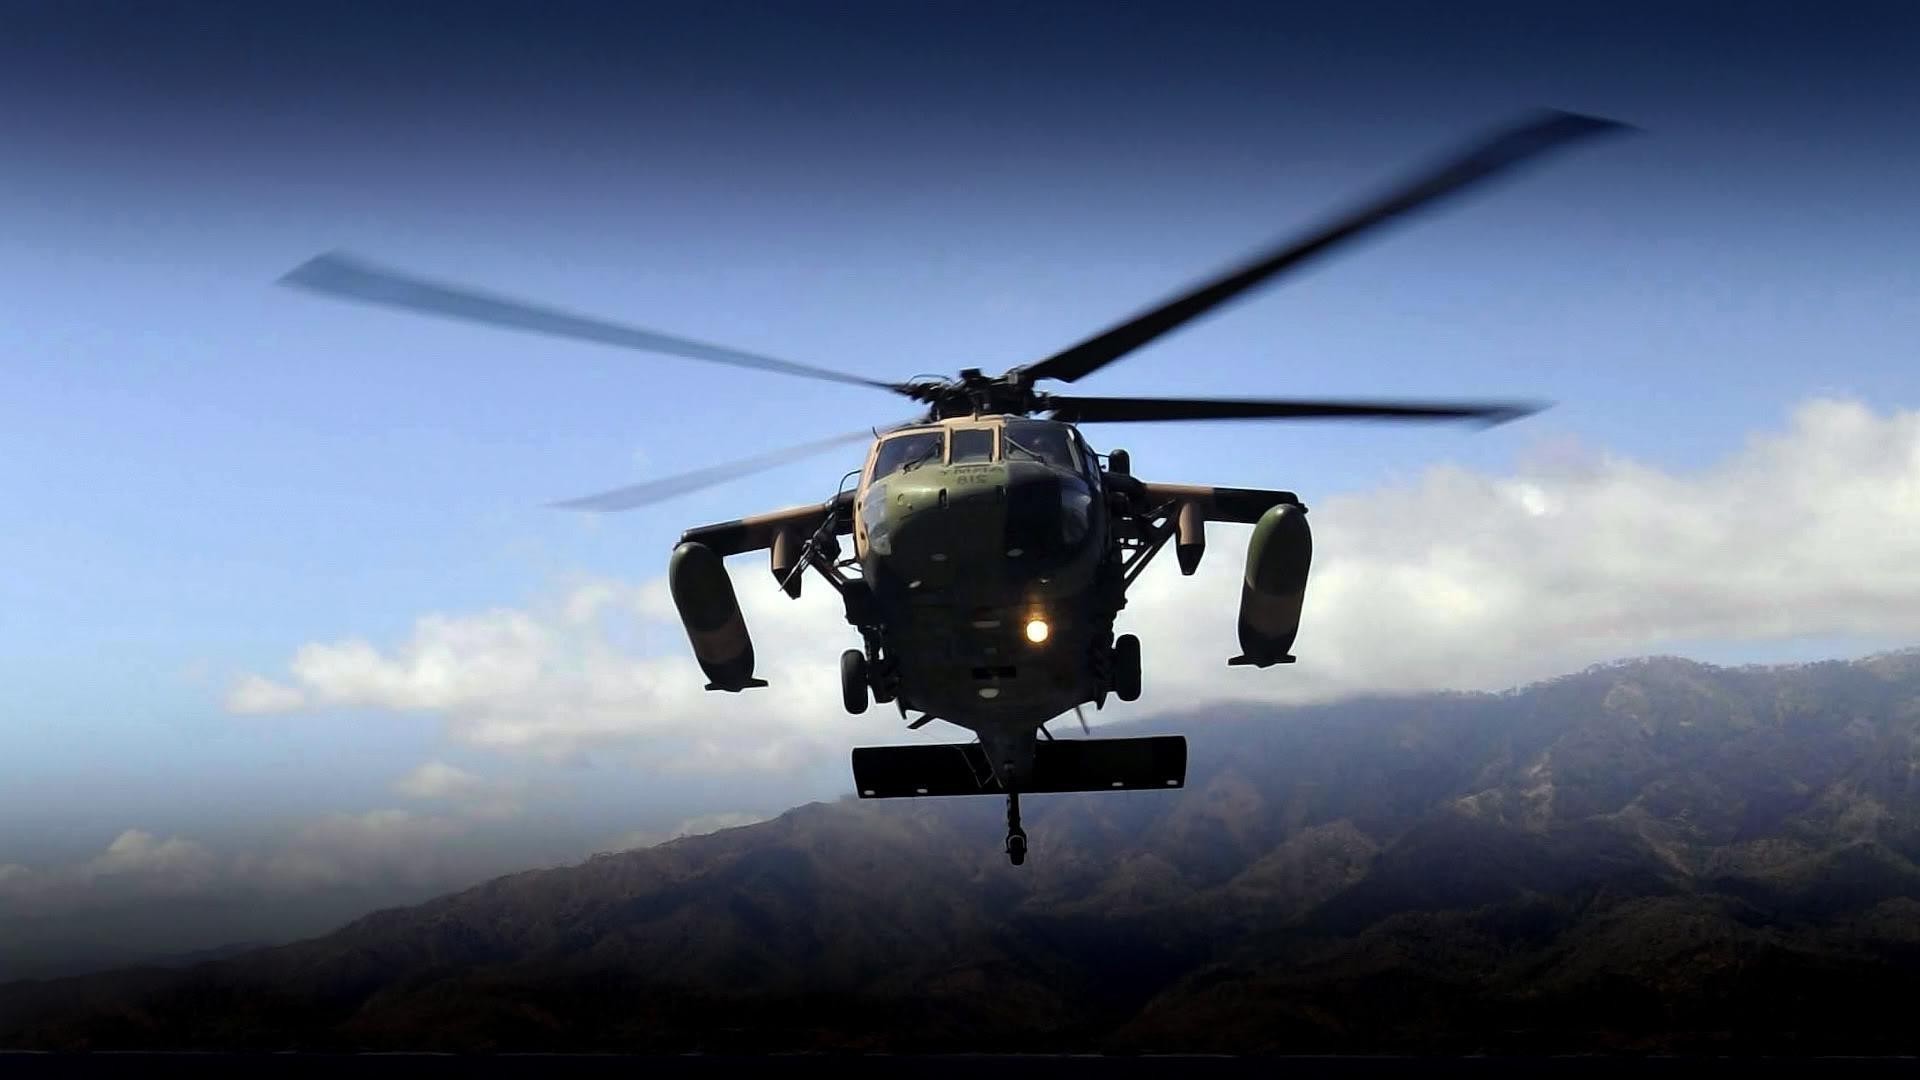 вертолеты вертолет самолет военные транспортная система самолет воздуха автомобиль небо путешествия летать рейс технология аэропорт